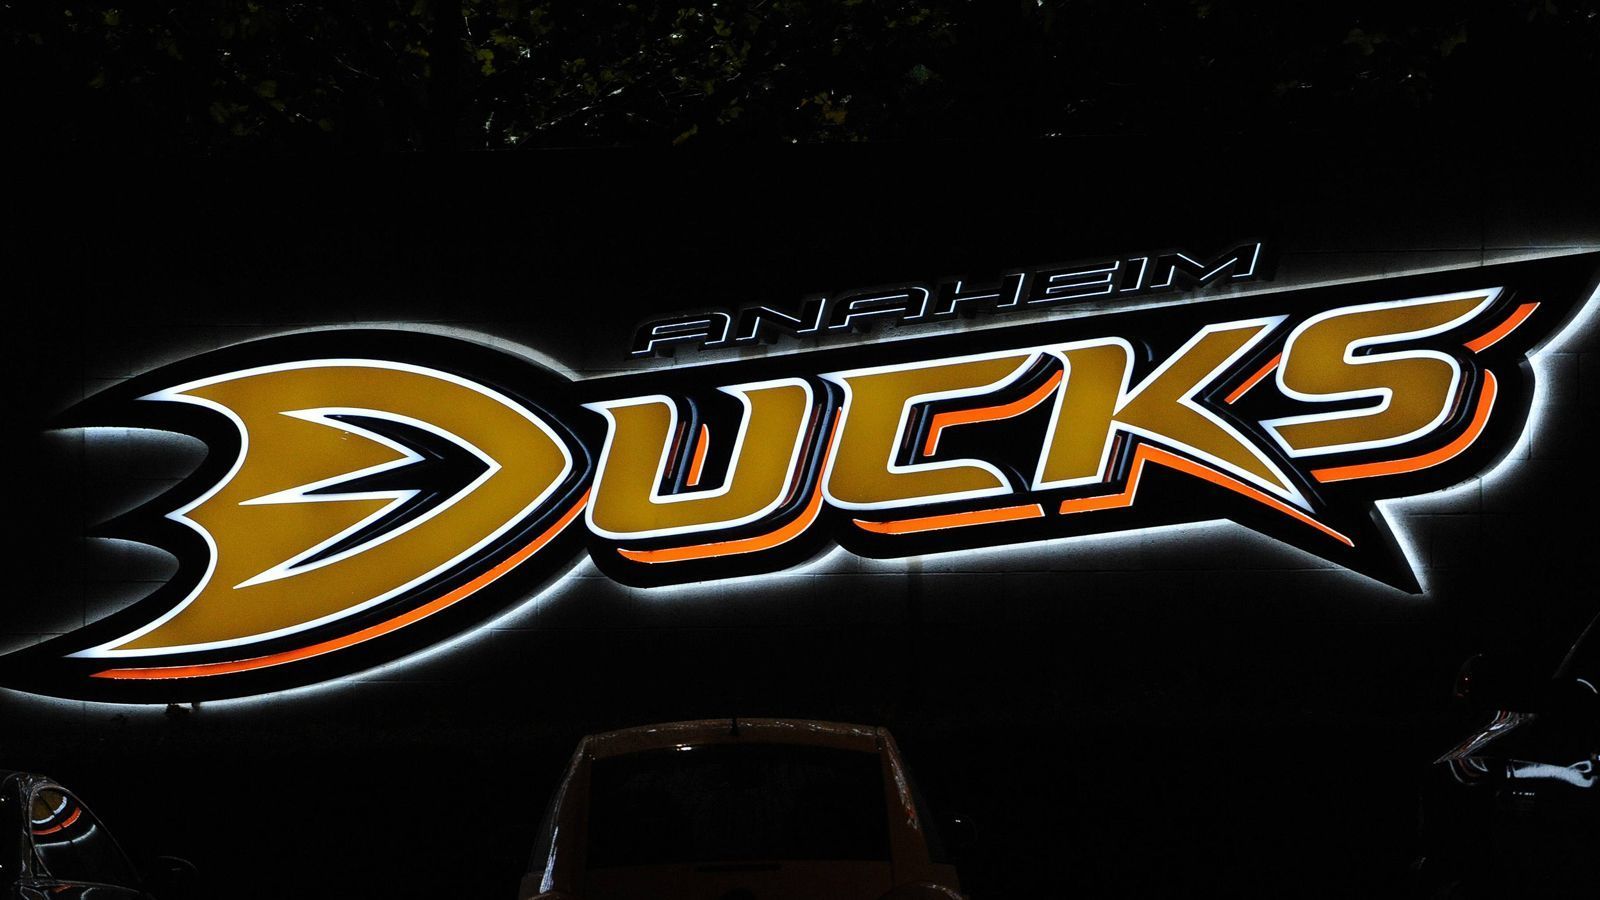 
                <strong>Anaheim Ducks</strong><br>
                Die im Jahre 1993 gegründeten Anaheim Ducks wurden nach dem im Jahr zuvor veröffentlichten Eishockey-Spielfilm "Mighty Ducks – Das Superteam" benannt. Die Disney-Tochterfirma Buena Vista hatte den Hollywood-Film produziert. Der Disney-Konzern selbst gründete das NHL-Team und zahlte dafür eine Gebühr von 50 Millionen US-Dollar. Als Disney das Team 2005 verkaufte, erfolgte die Umbenennung in Anaheim Ducks.
              